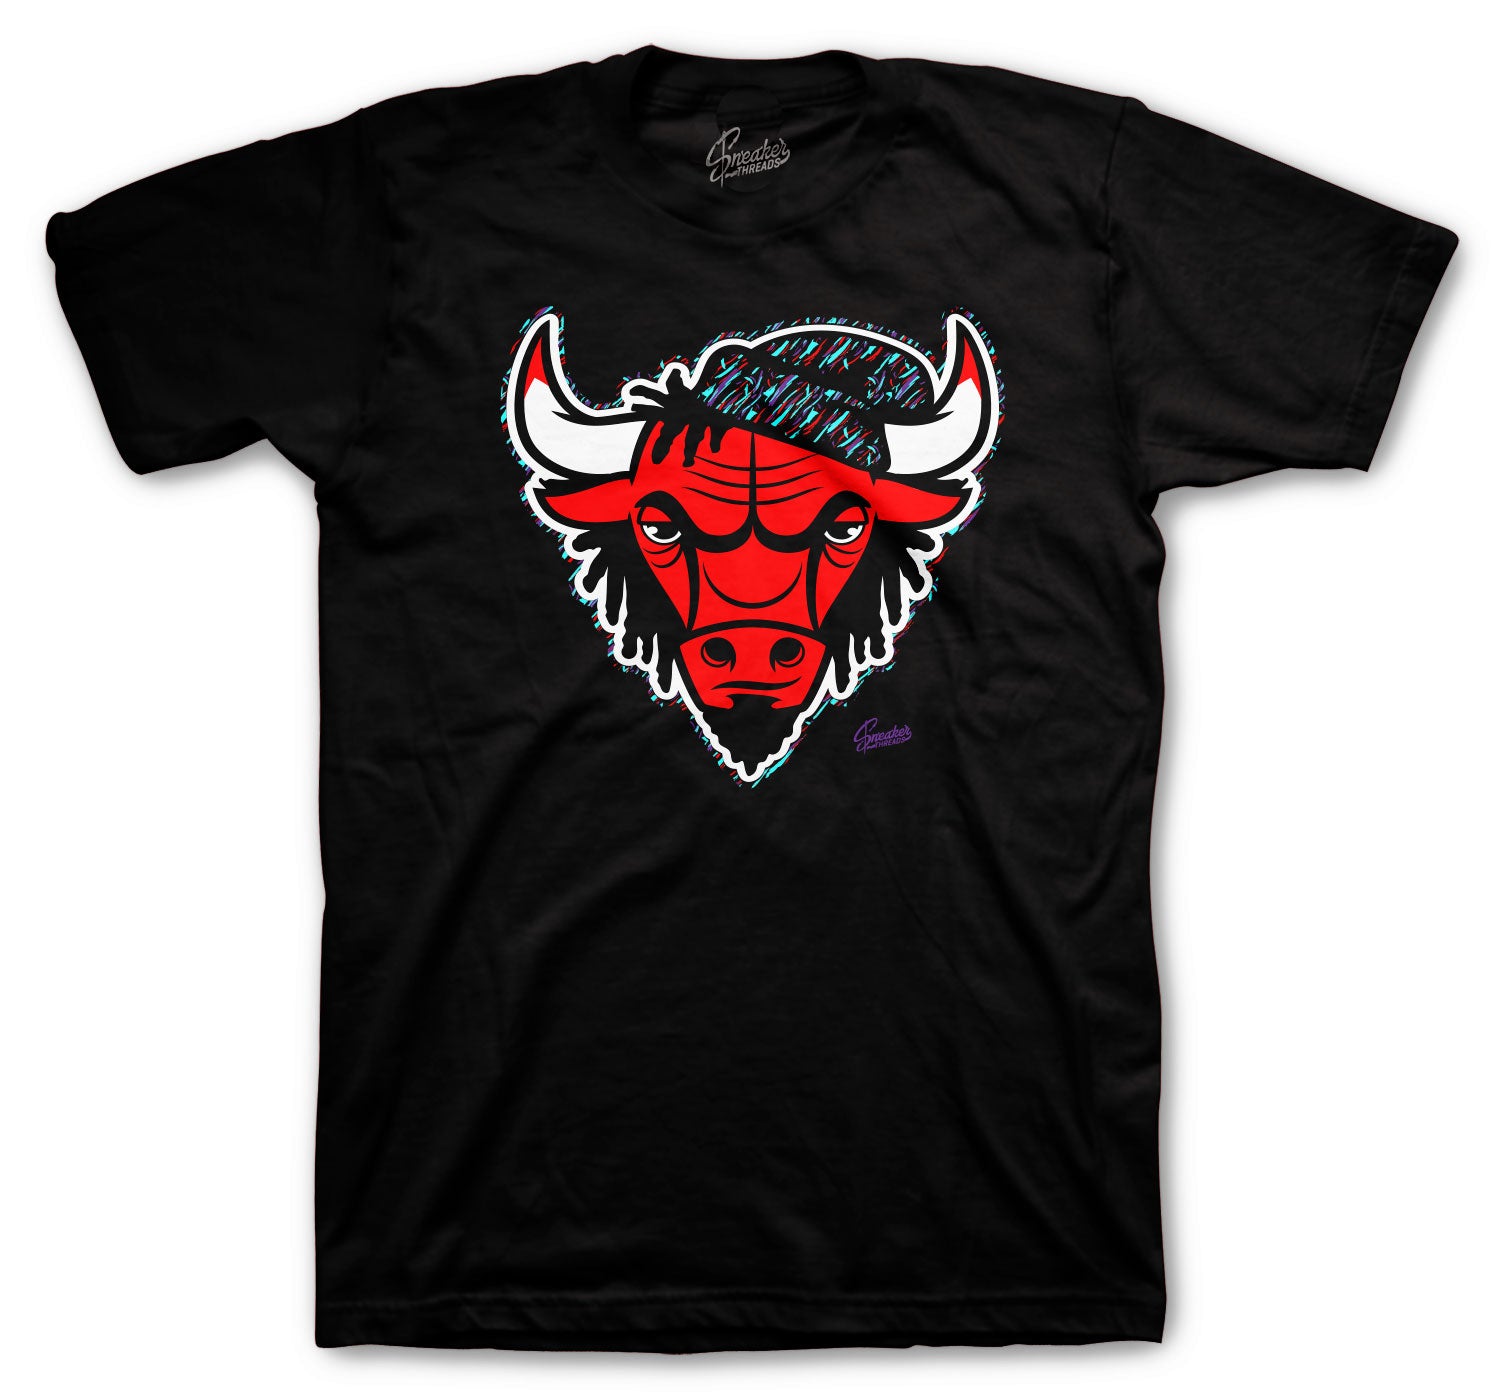 Retro 5 Top 3 Shirt - Rasta Bull - Black